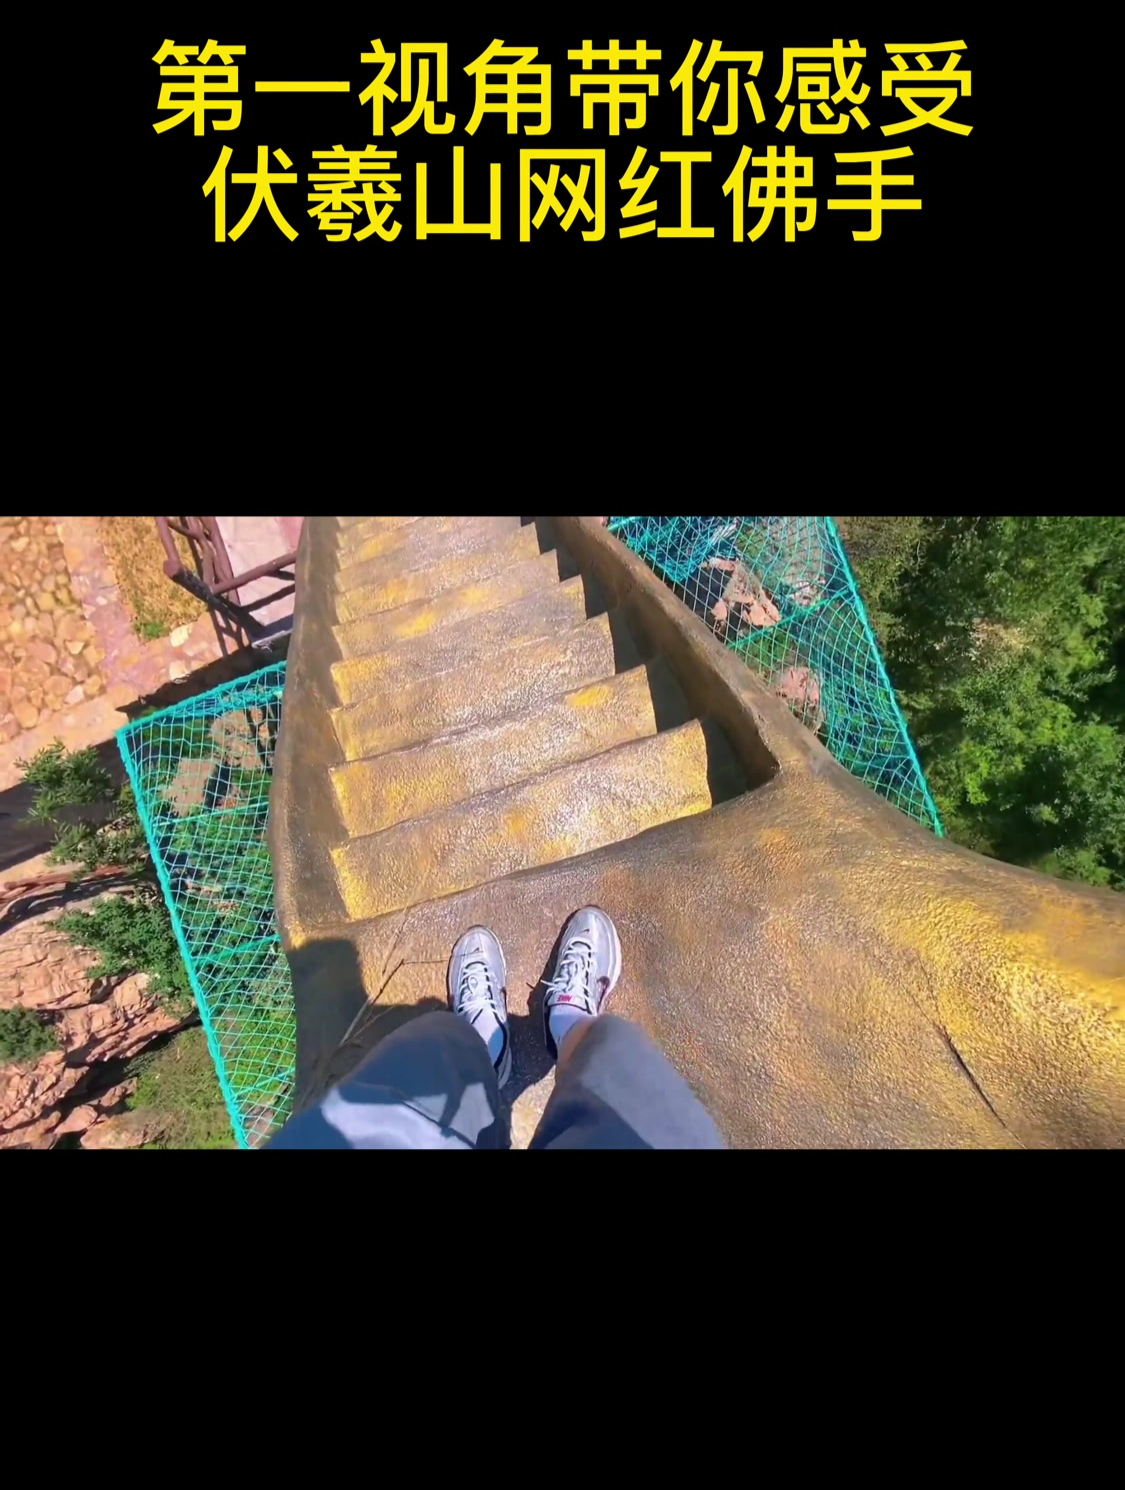 恐高症难度高的谷濑吊桥的照片素材免抠元素模板下载 - 图巨人